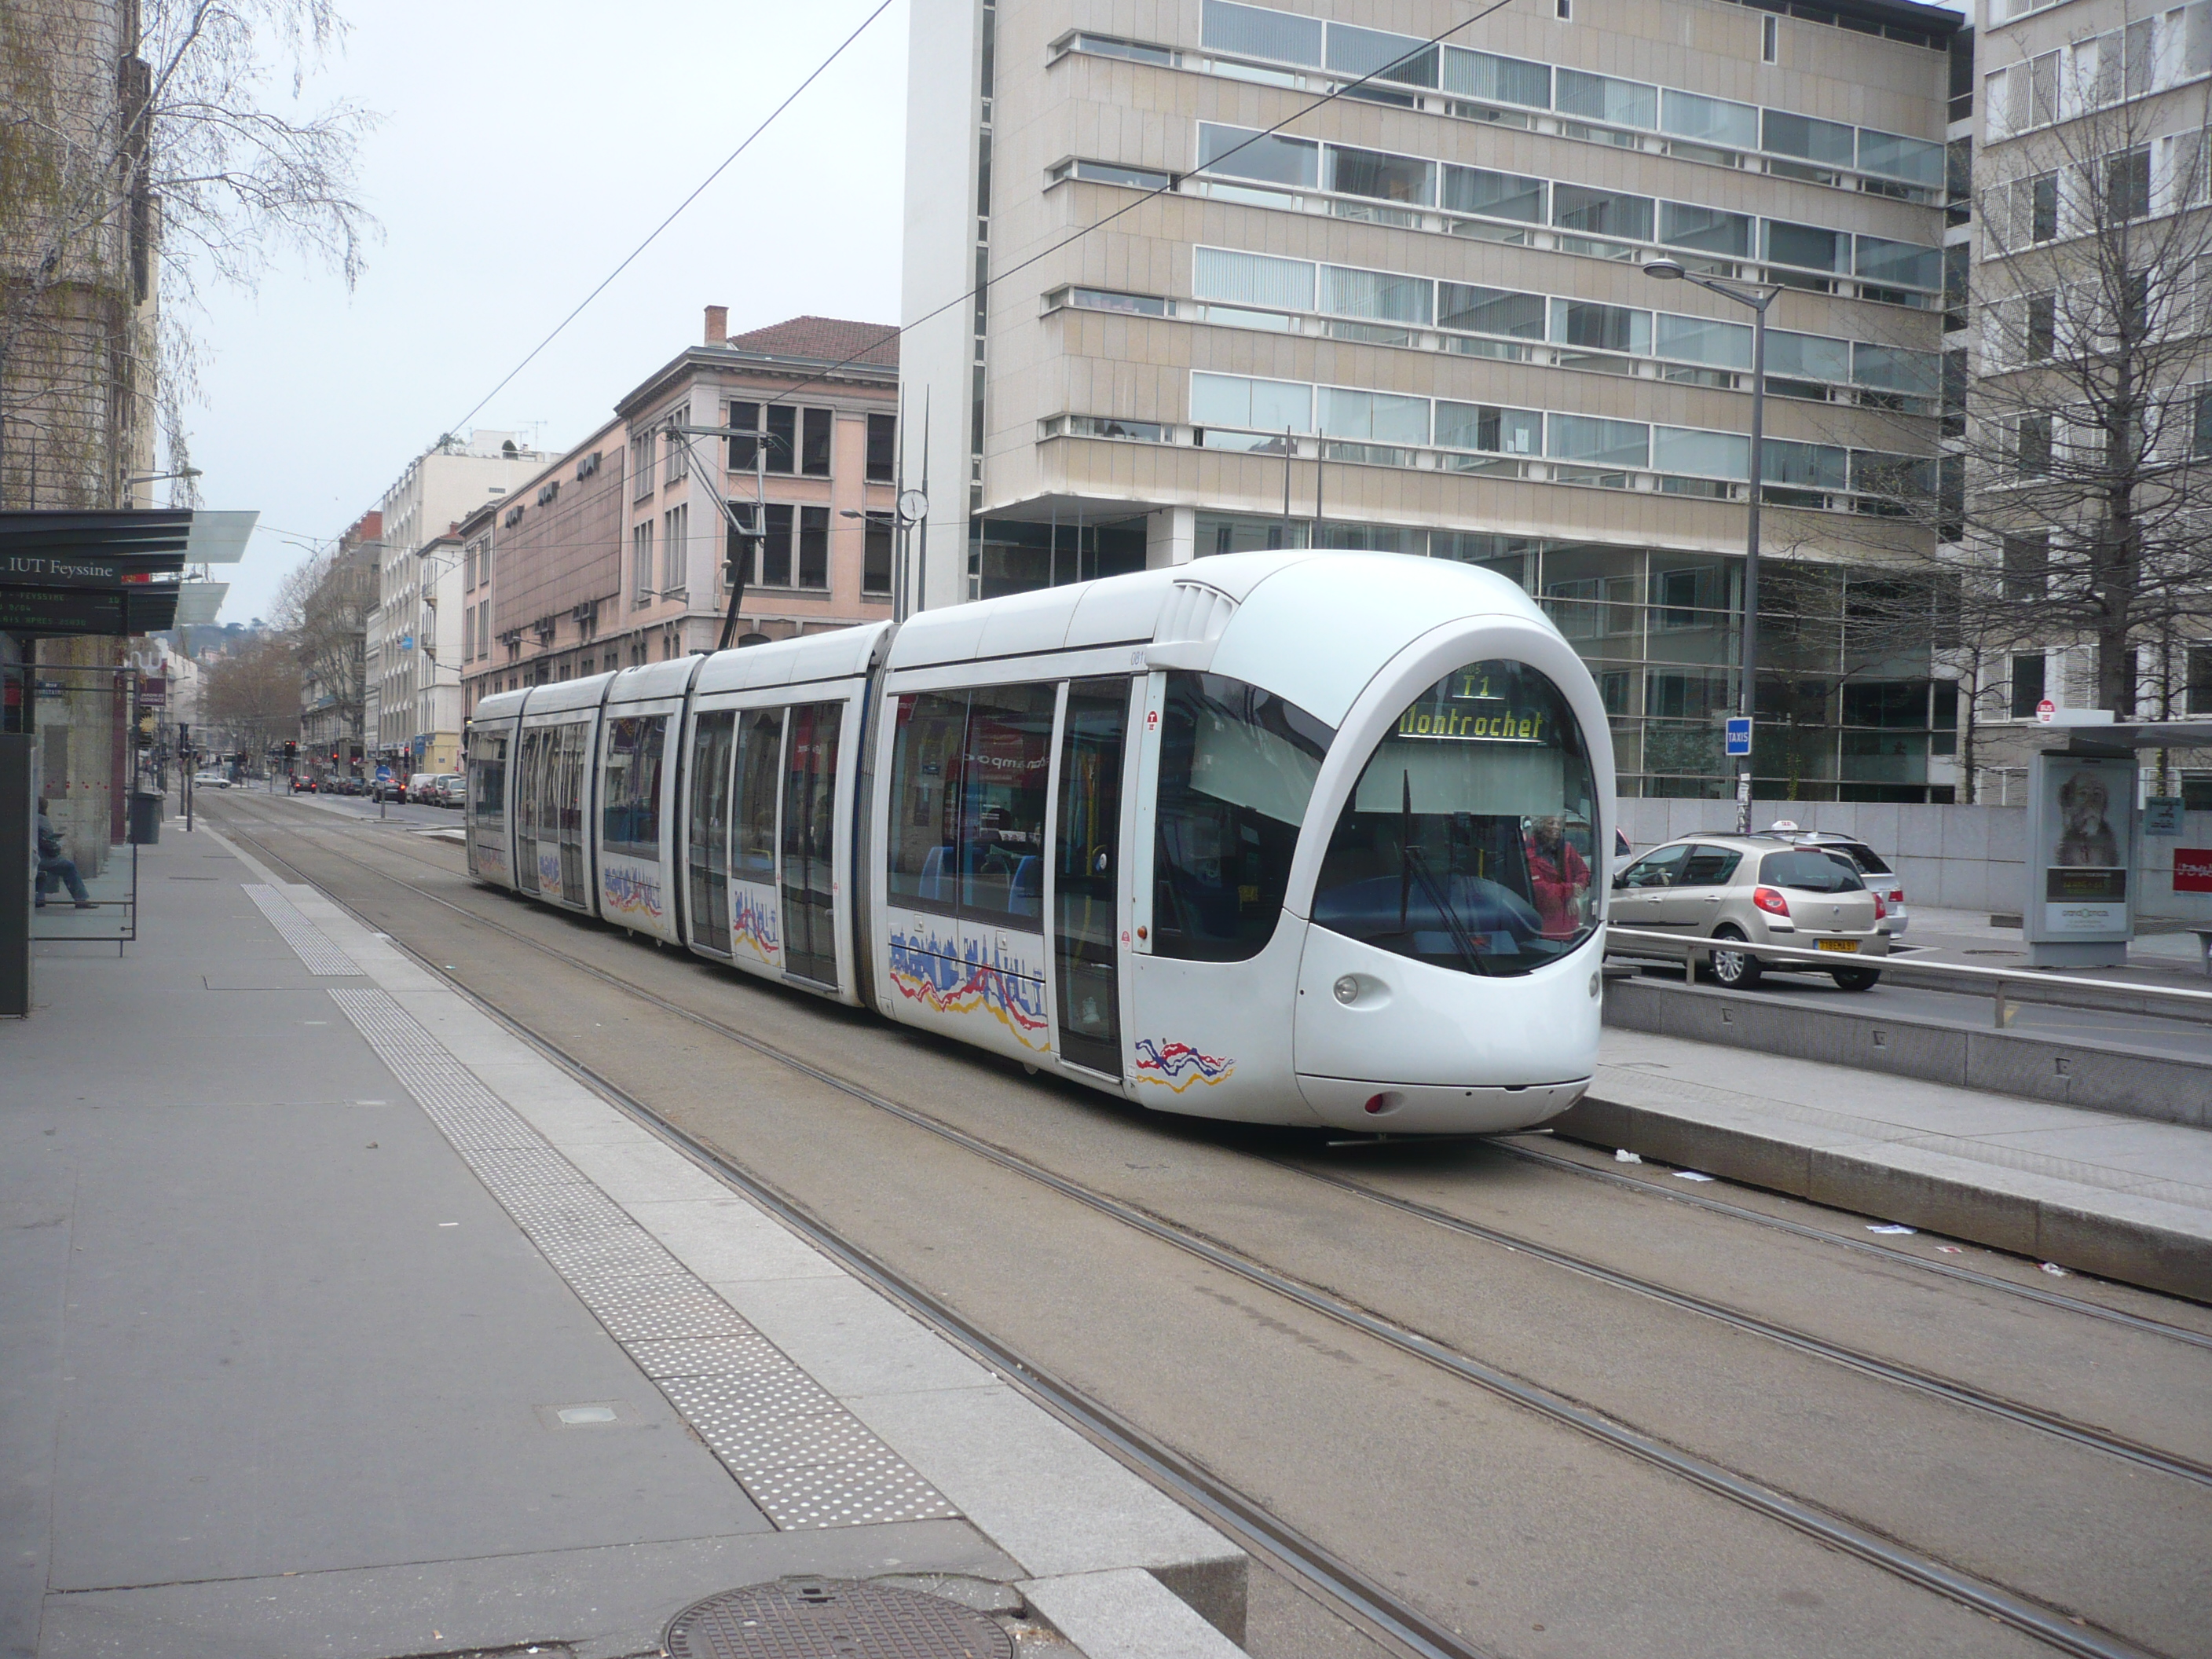 Lyon tram